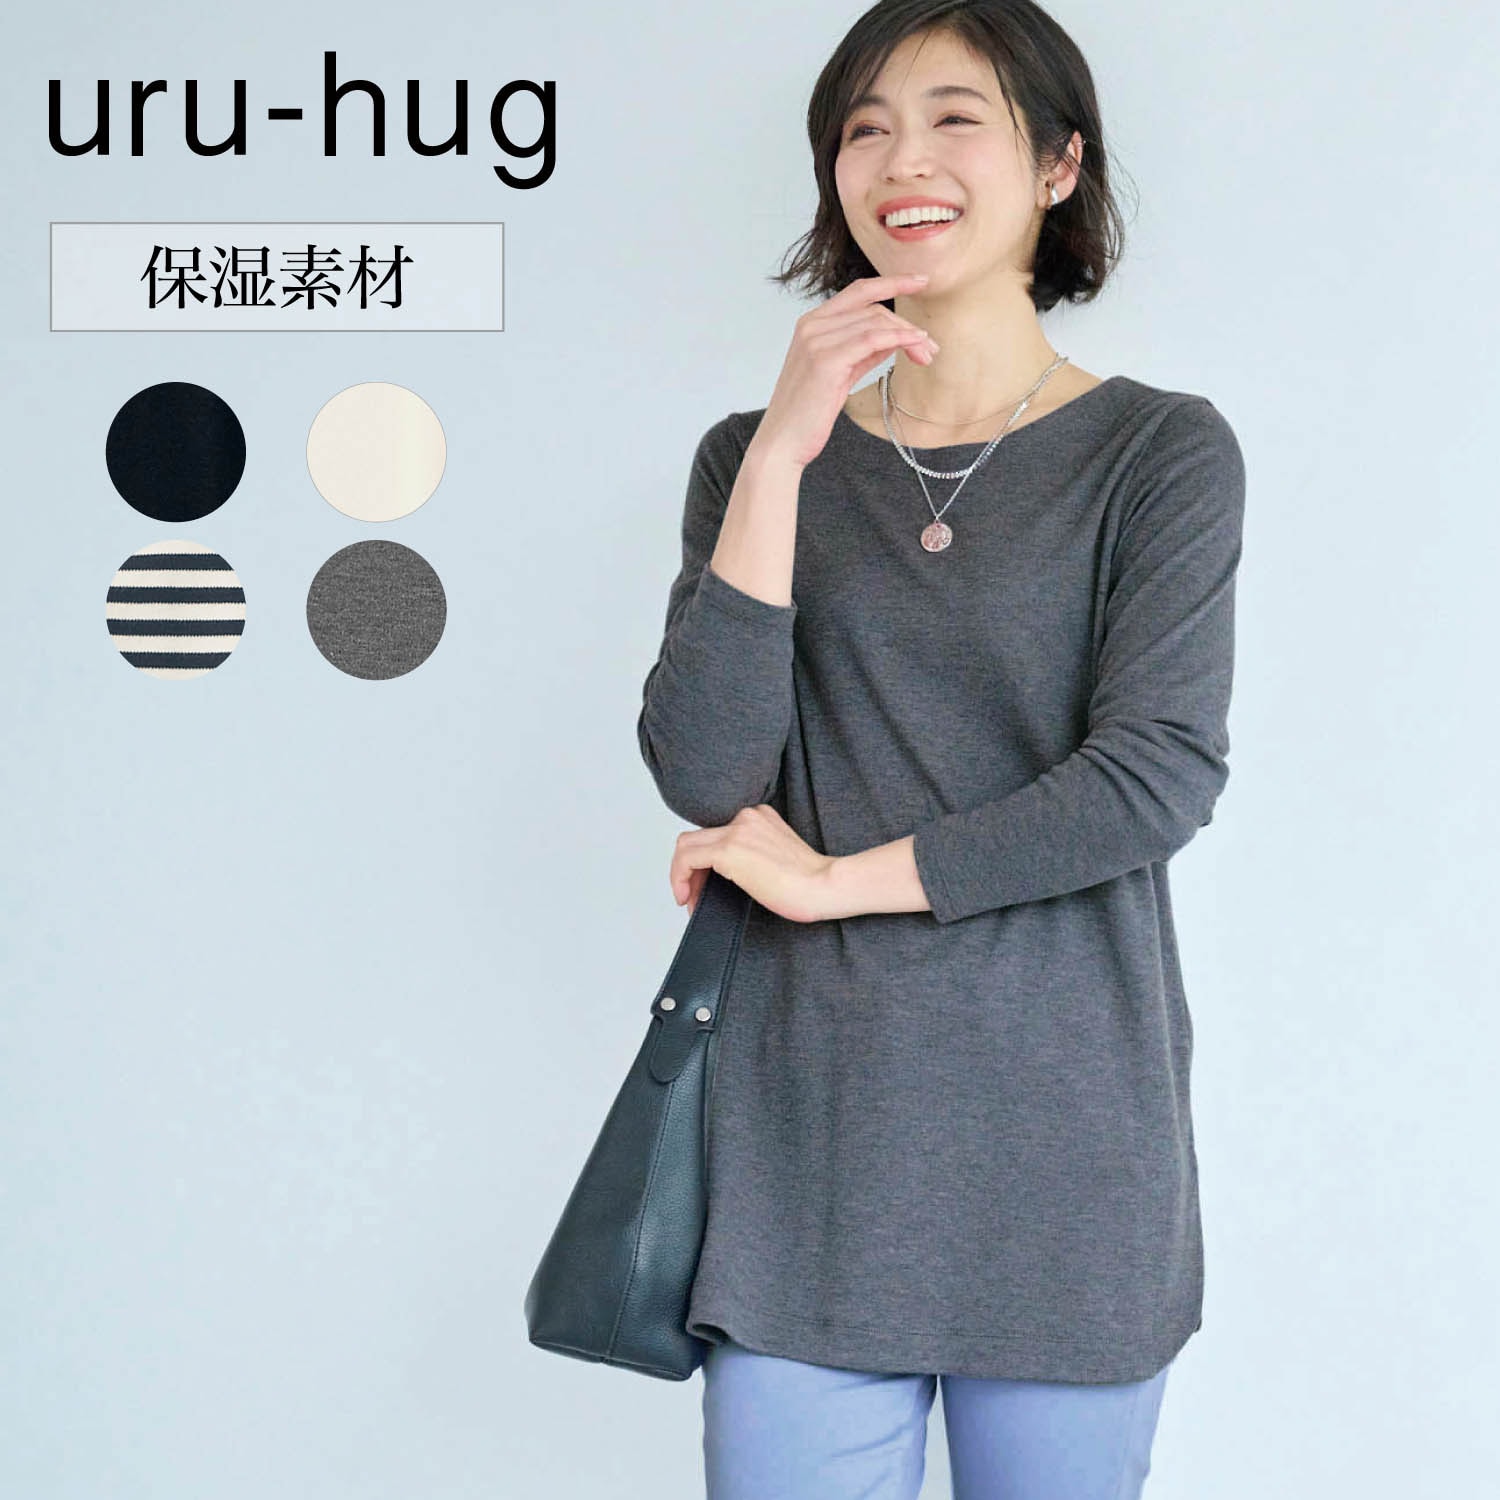 【ウルハグ/uru-hug】保湿素材の綿混カットソーチュニック (LL~6L)